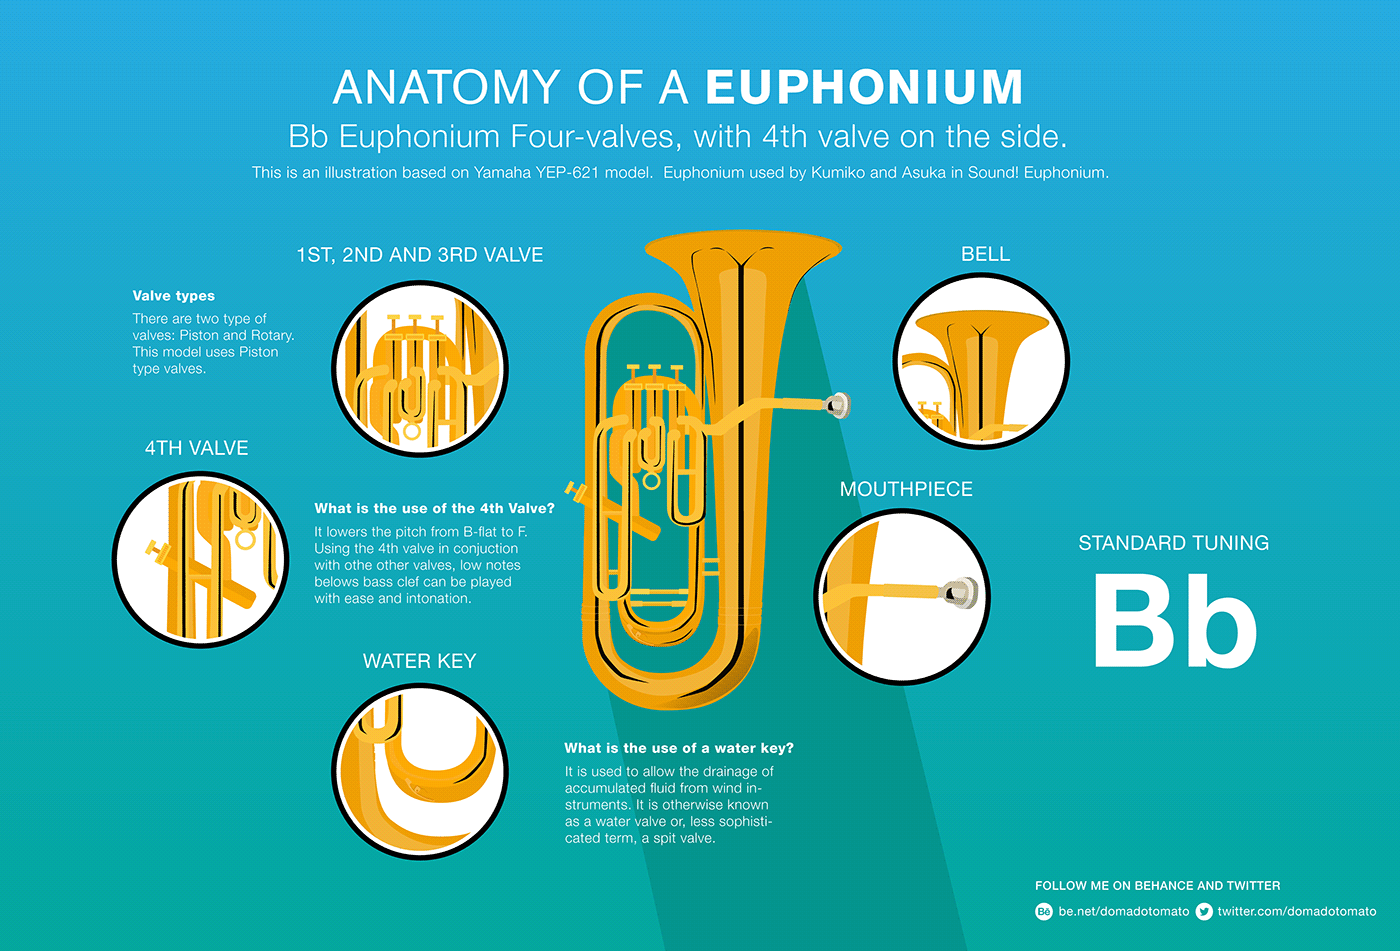 sound! euphonium Kumiko euphonium Hibike! Euphonium Kyoto Animation